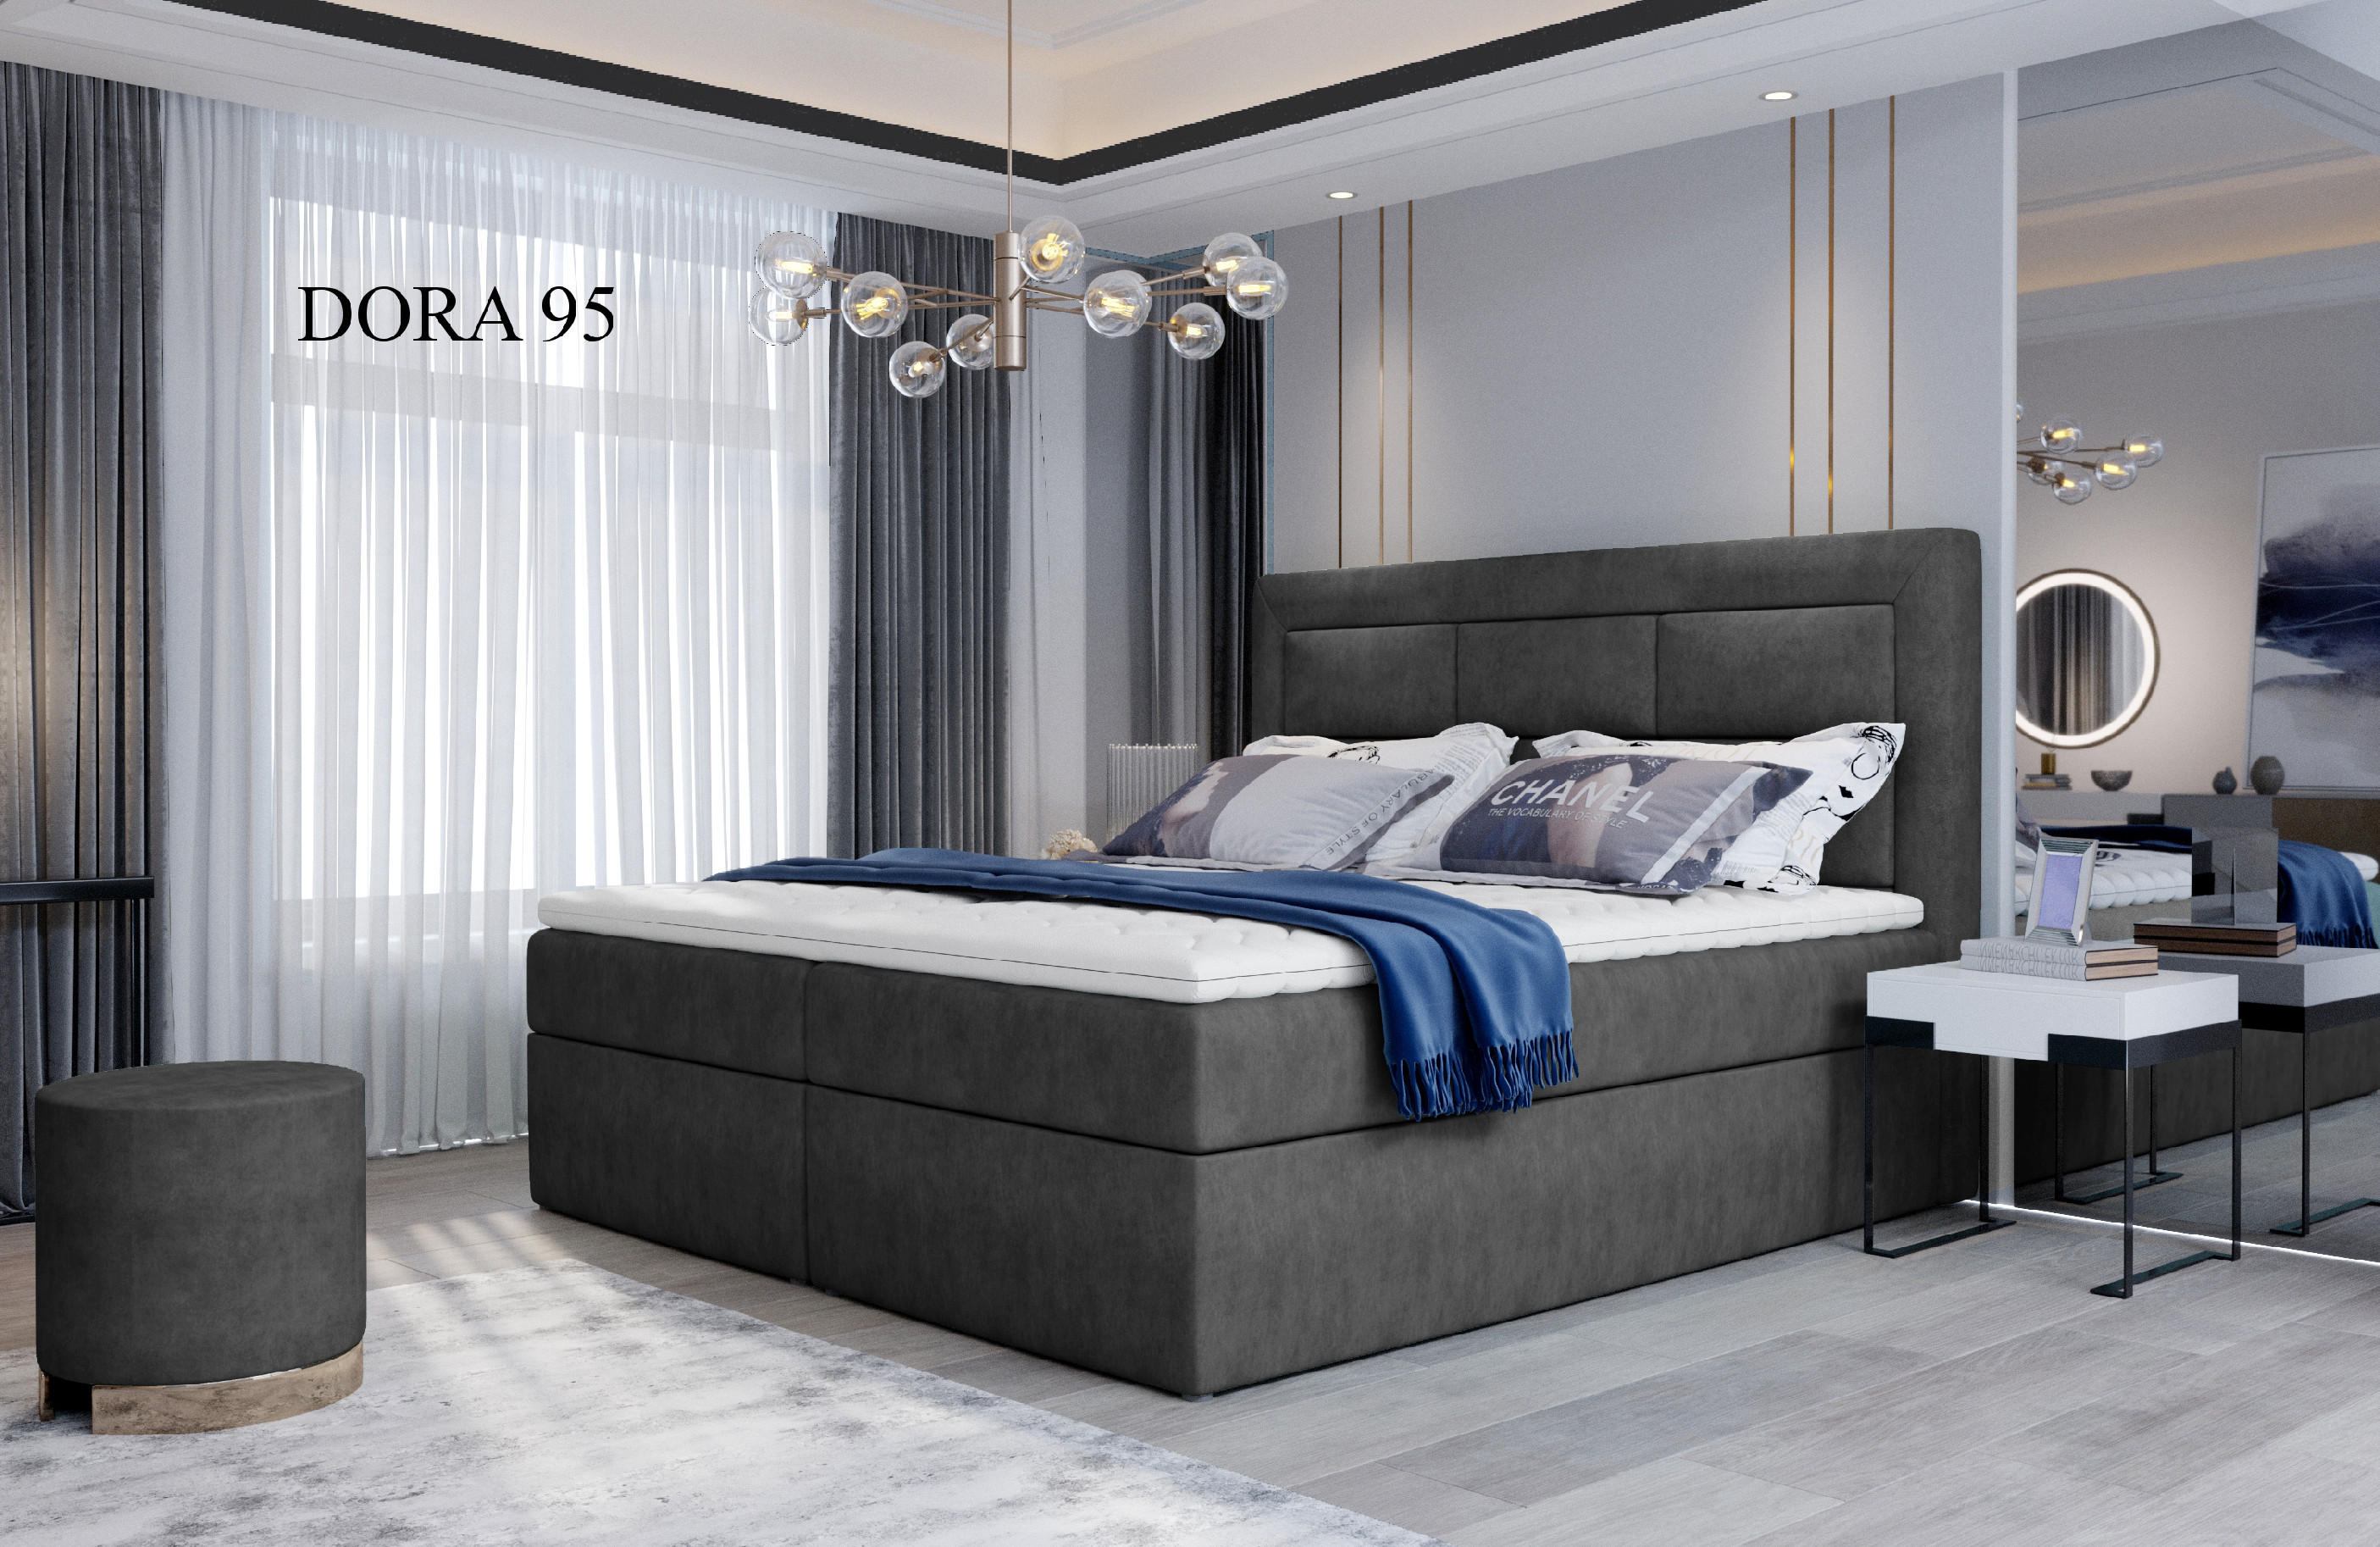 Čalouněná postel VIVRE Boxsprings 180 x 200 cm Provedení: Dora 95